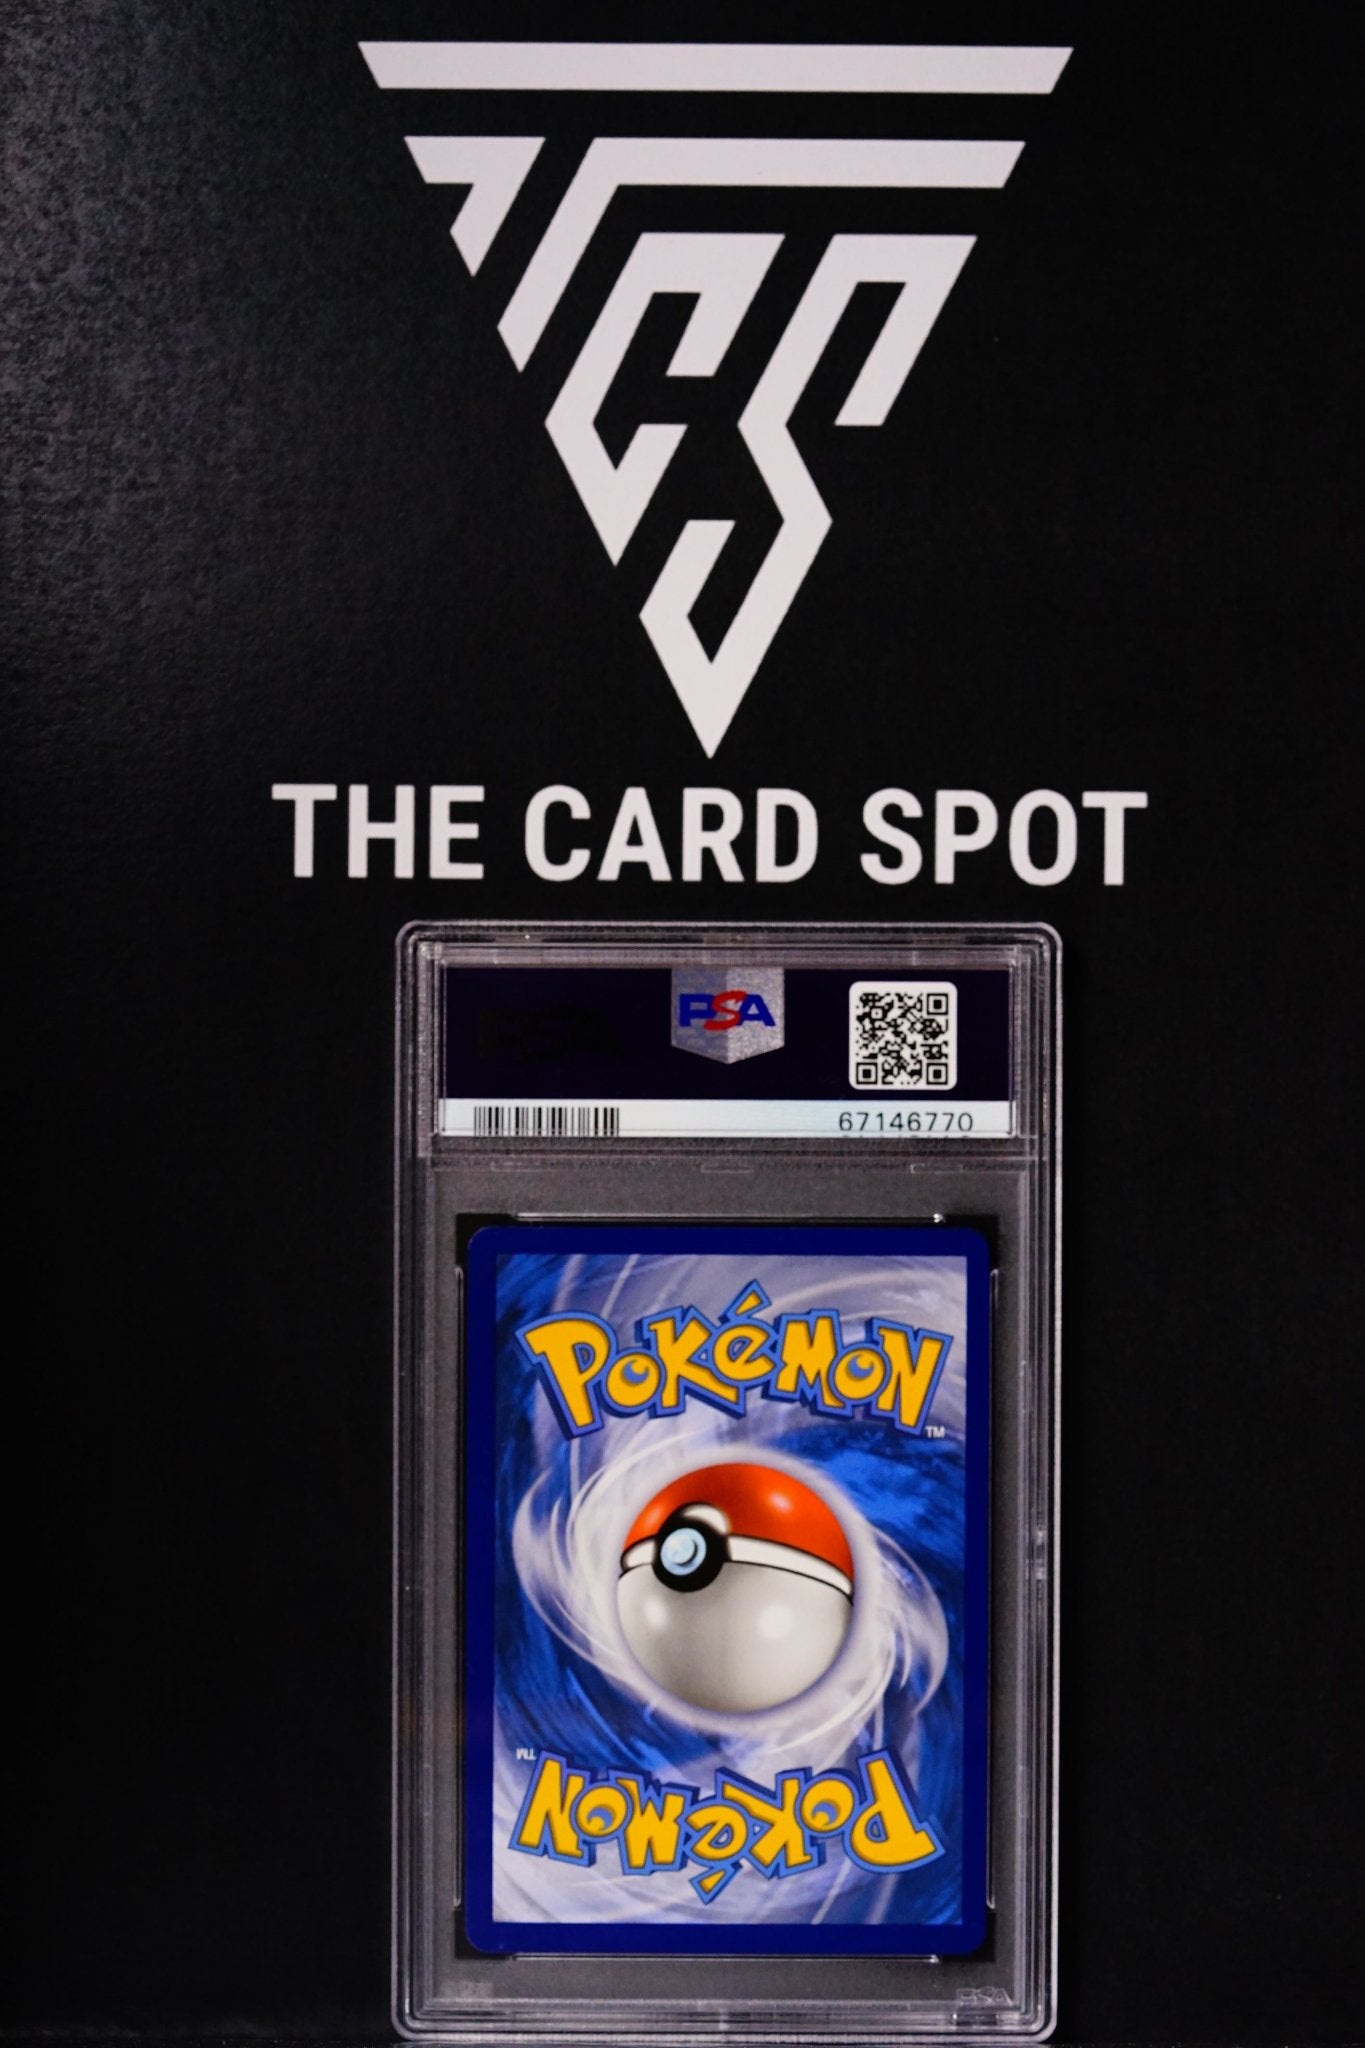 Pokemon Card: Eternatus V Shining Fates Rare PSA 10 - THE CARD SPOT PTY LTD.GradedPokémon